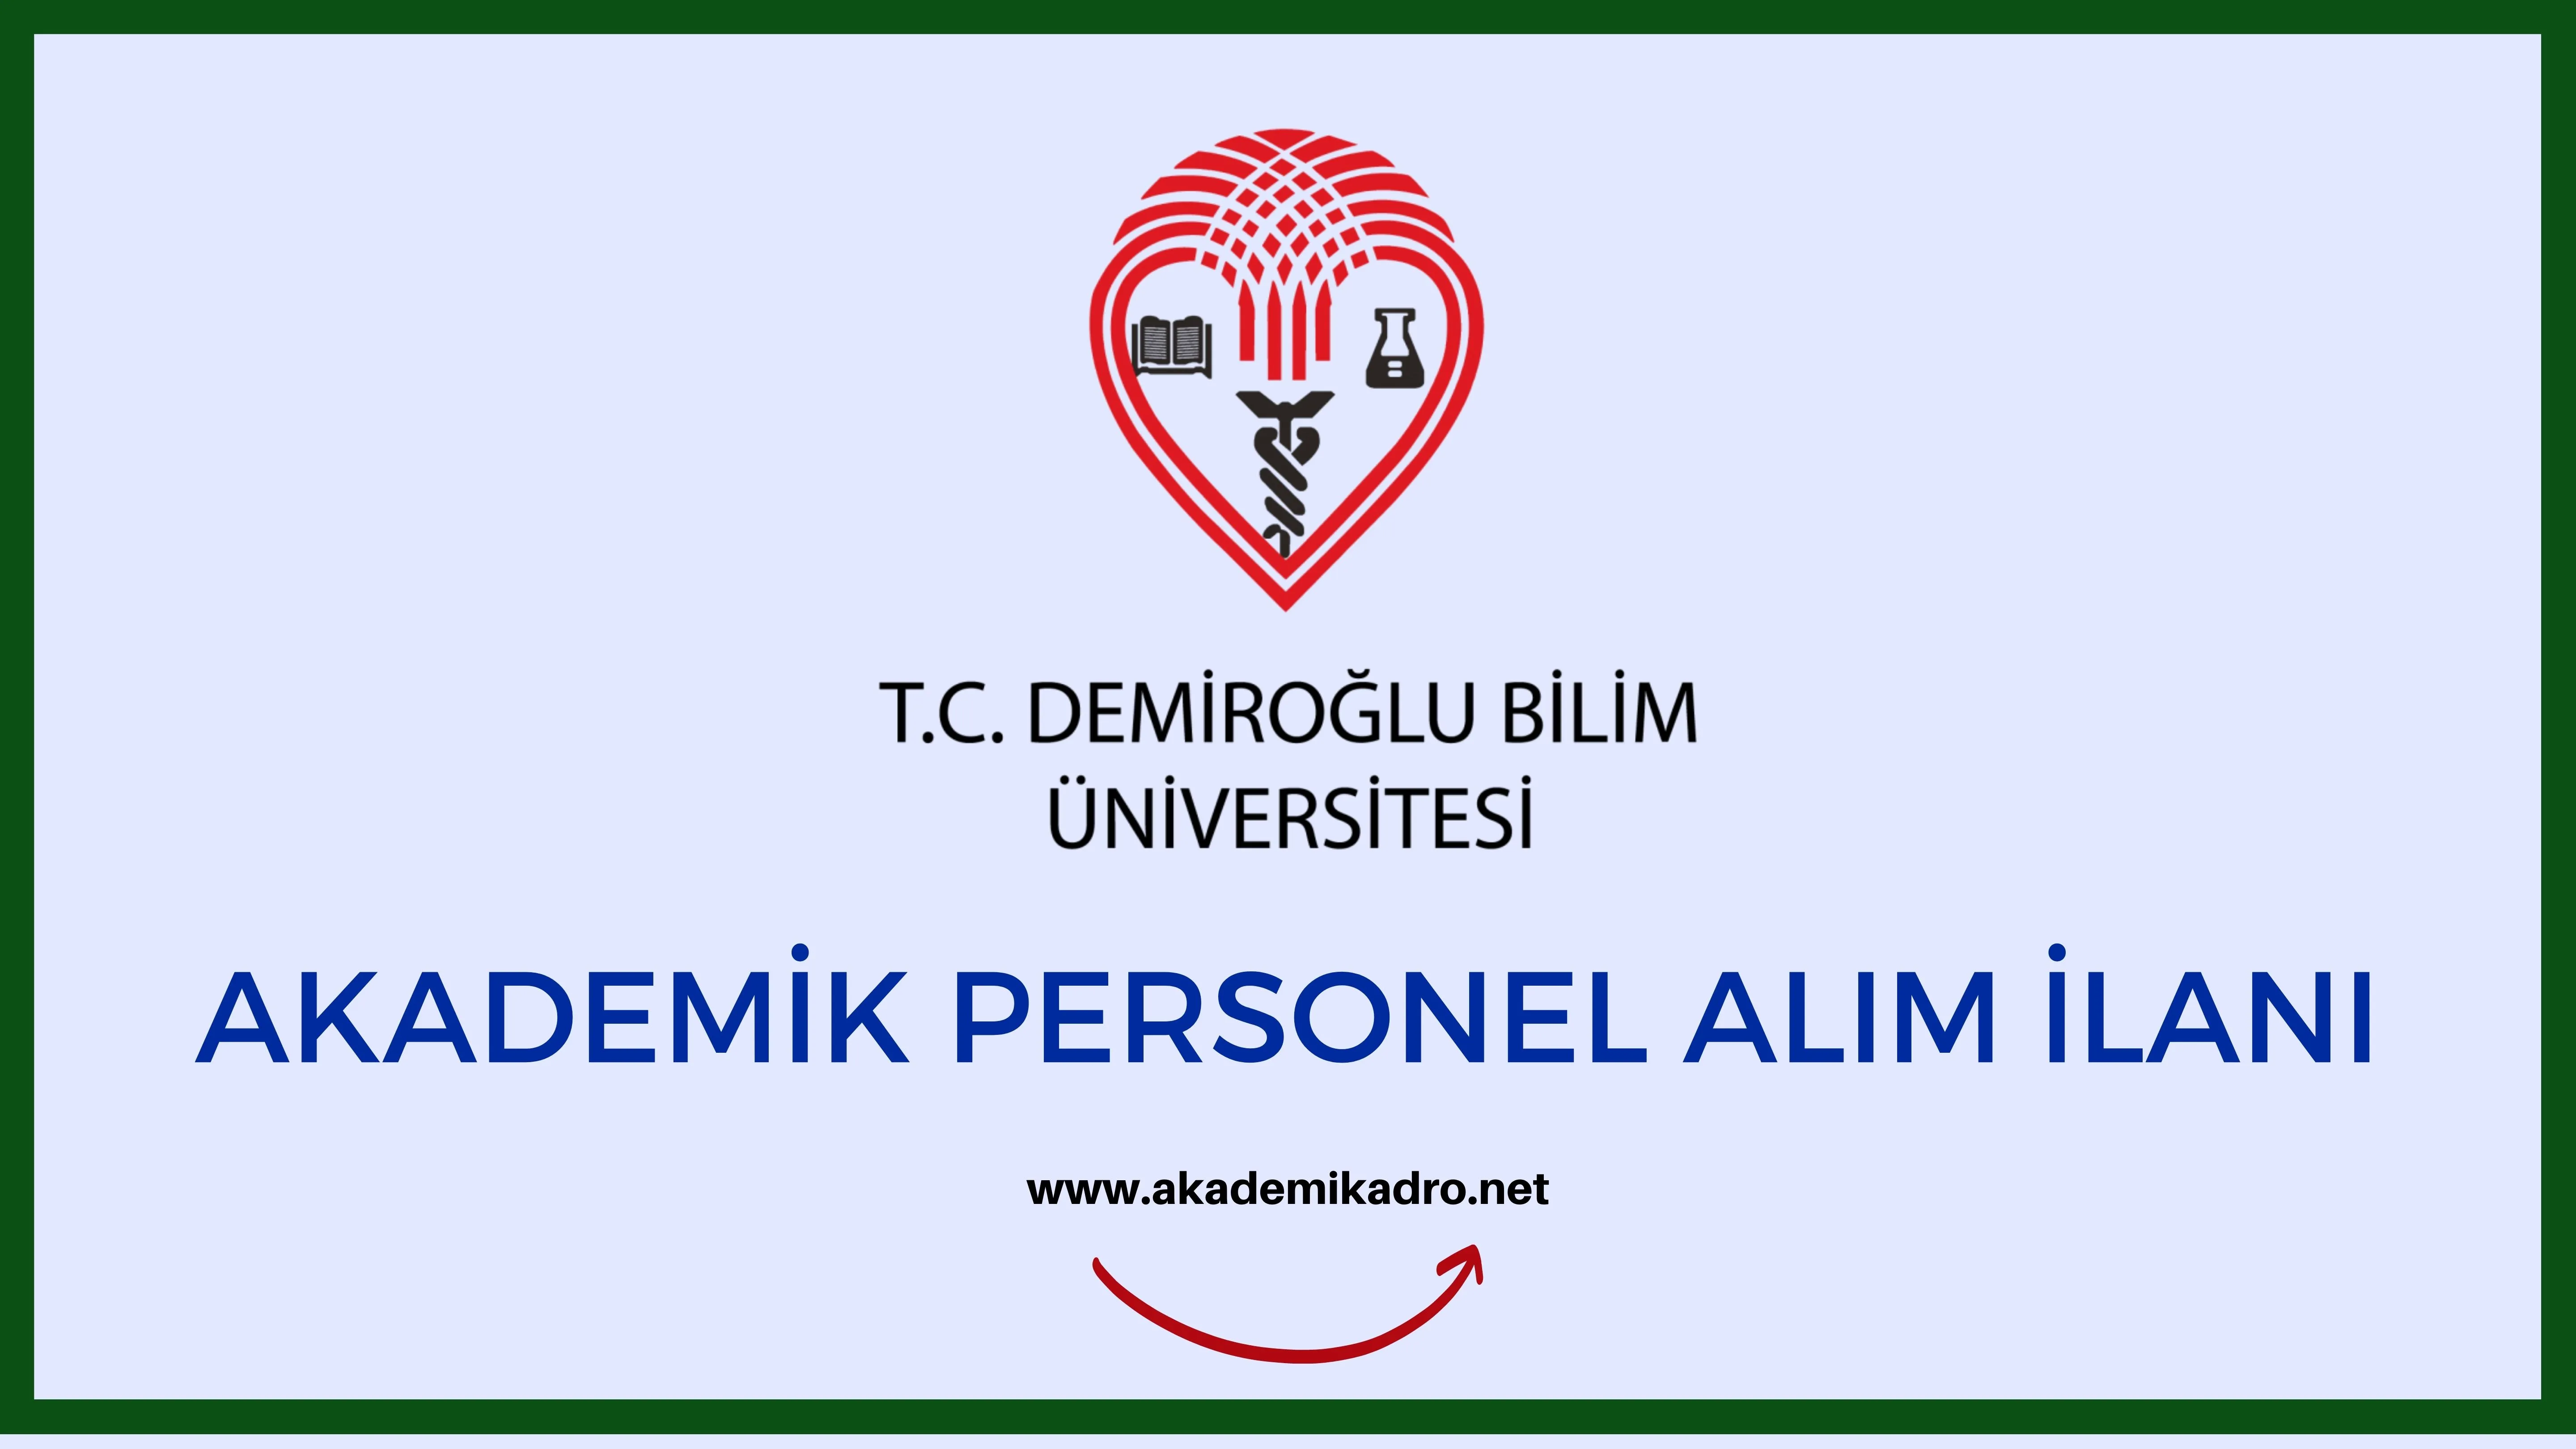 Demiroğlu Bilim Üniversitesi 5 akademik personel alacak